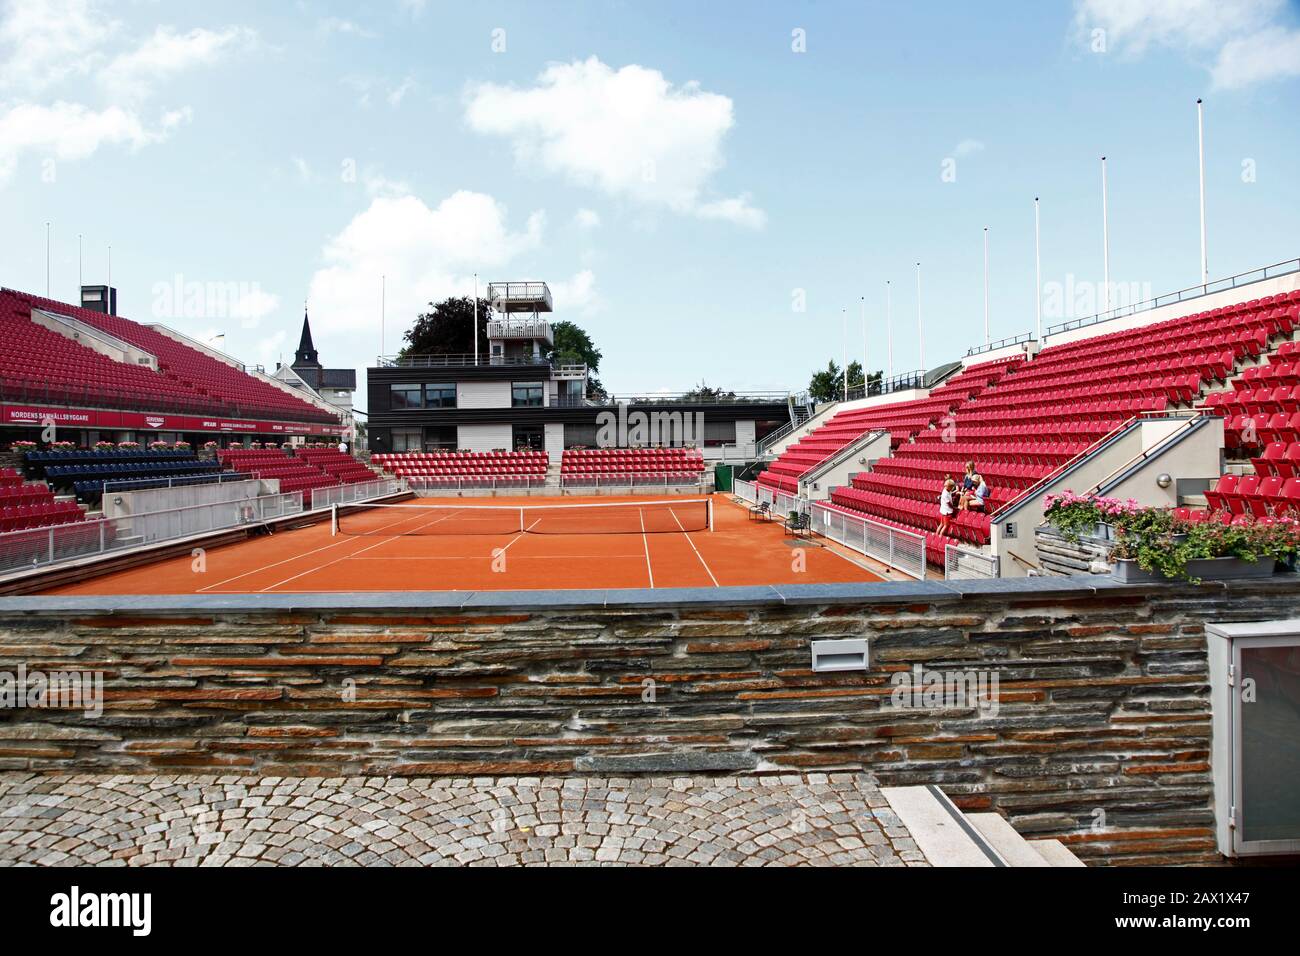 Das Herzfeld in Båstad im Tennisstadion von Båstad, das die größte Tennisanlage im Freien in der nordischen Region ist.Foto Jeppe Gustafsson Stockfoto